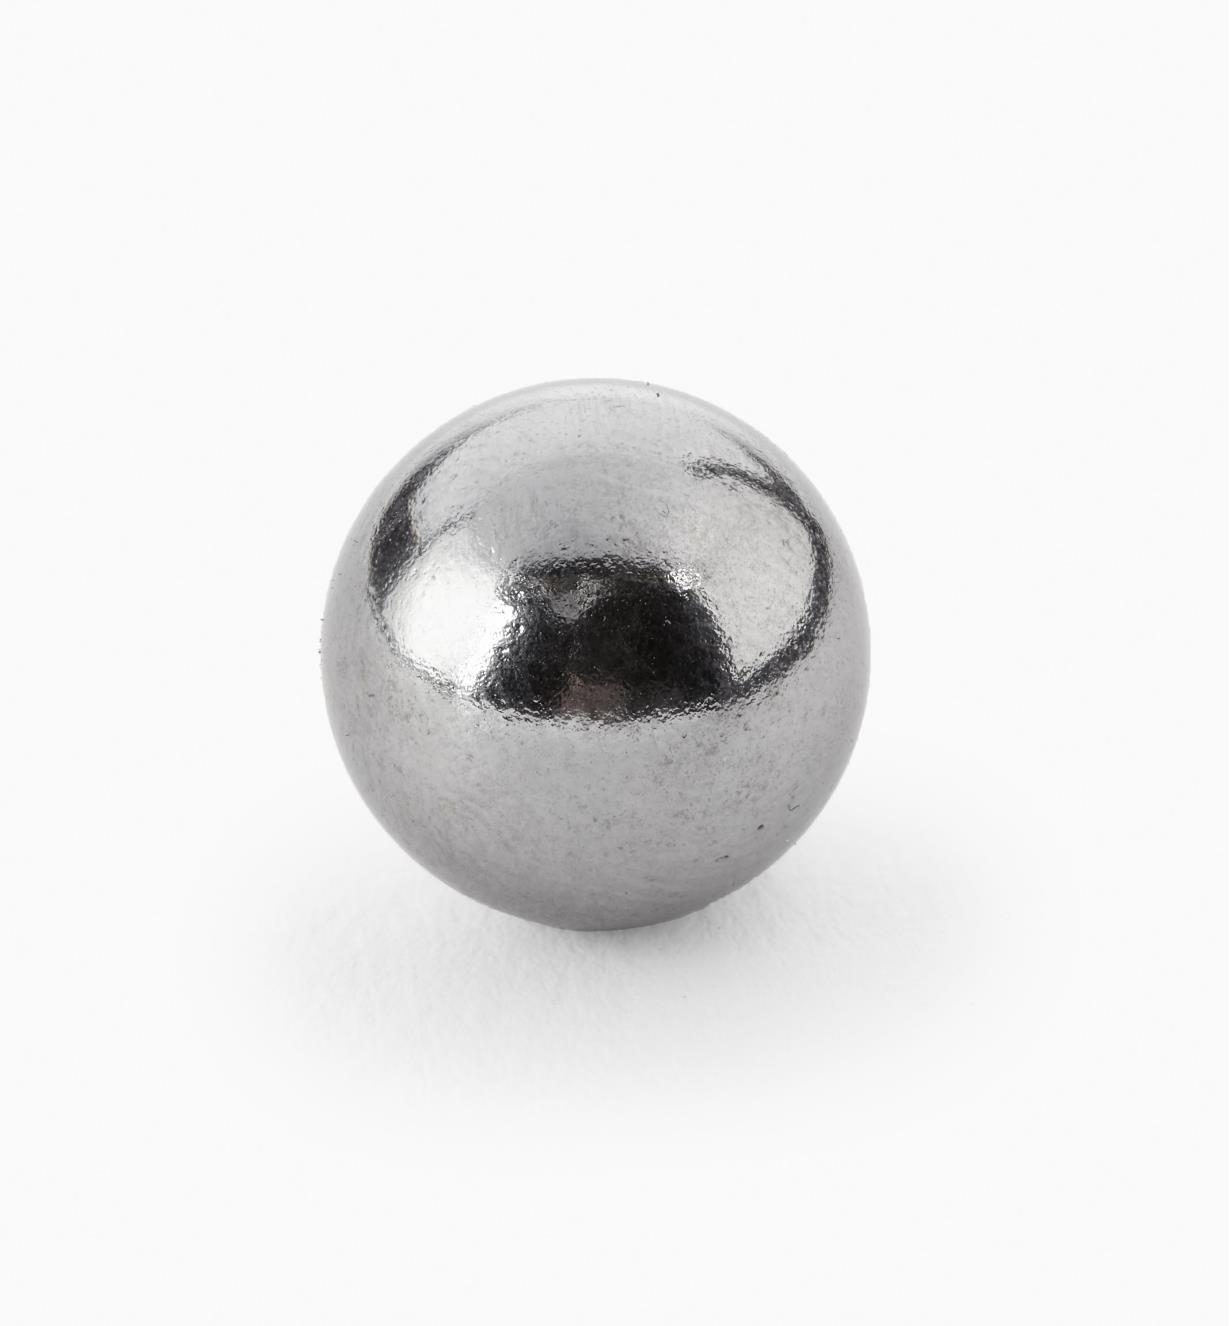 99K3861 - 5/8" (15mm) dia. Spherical Magnet, each